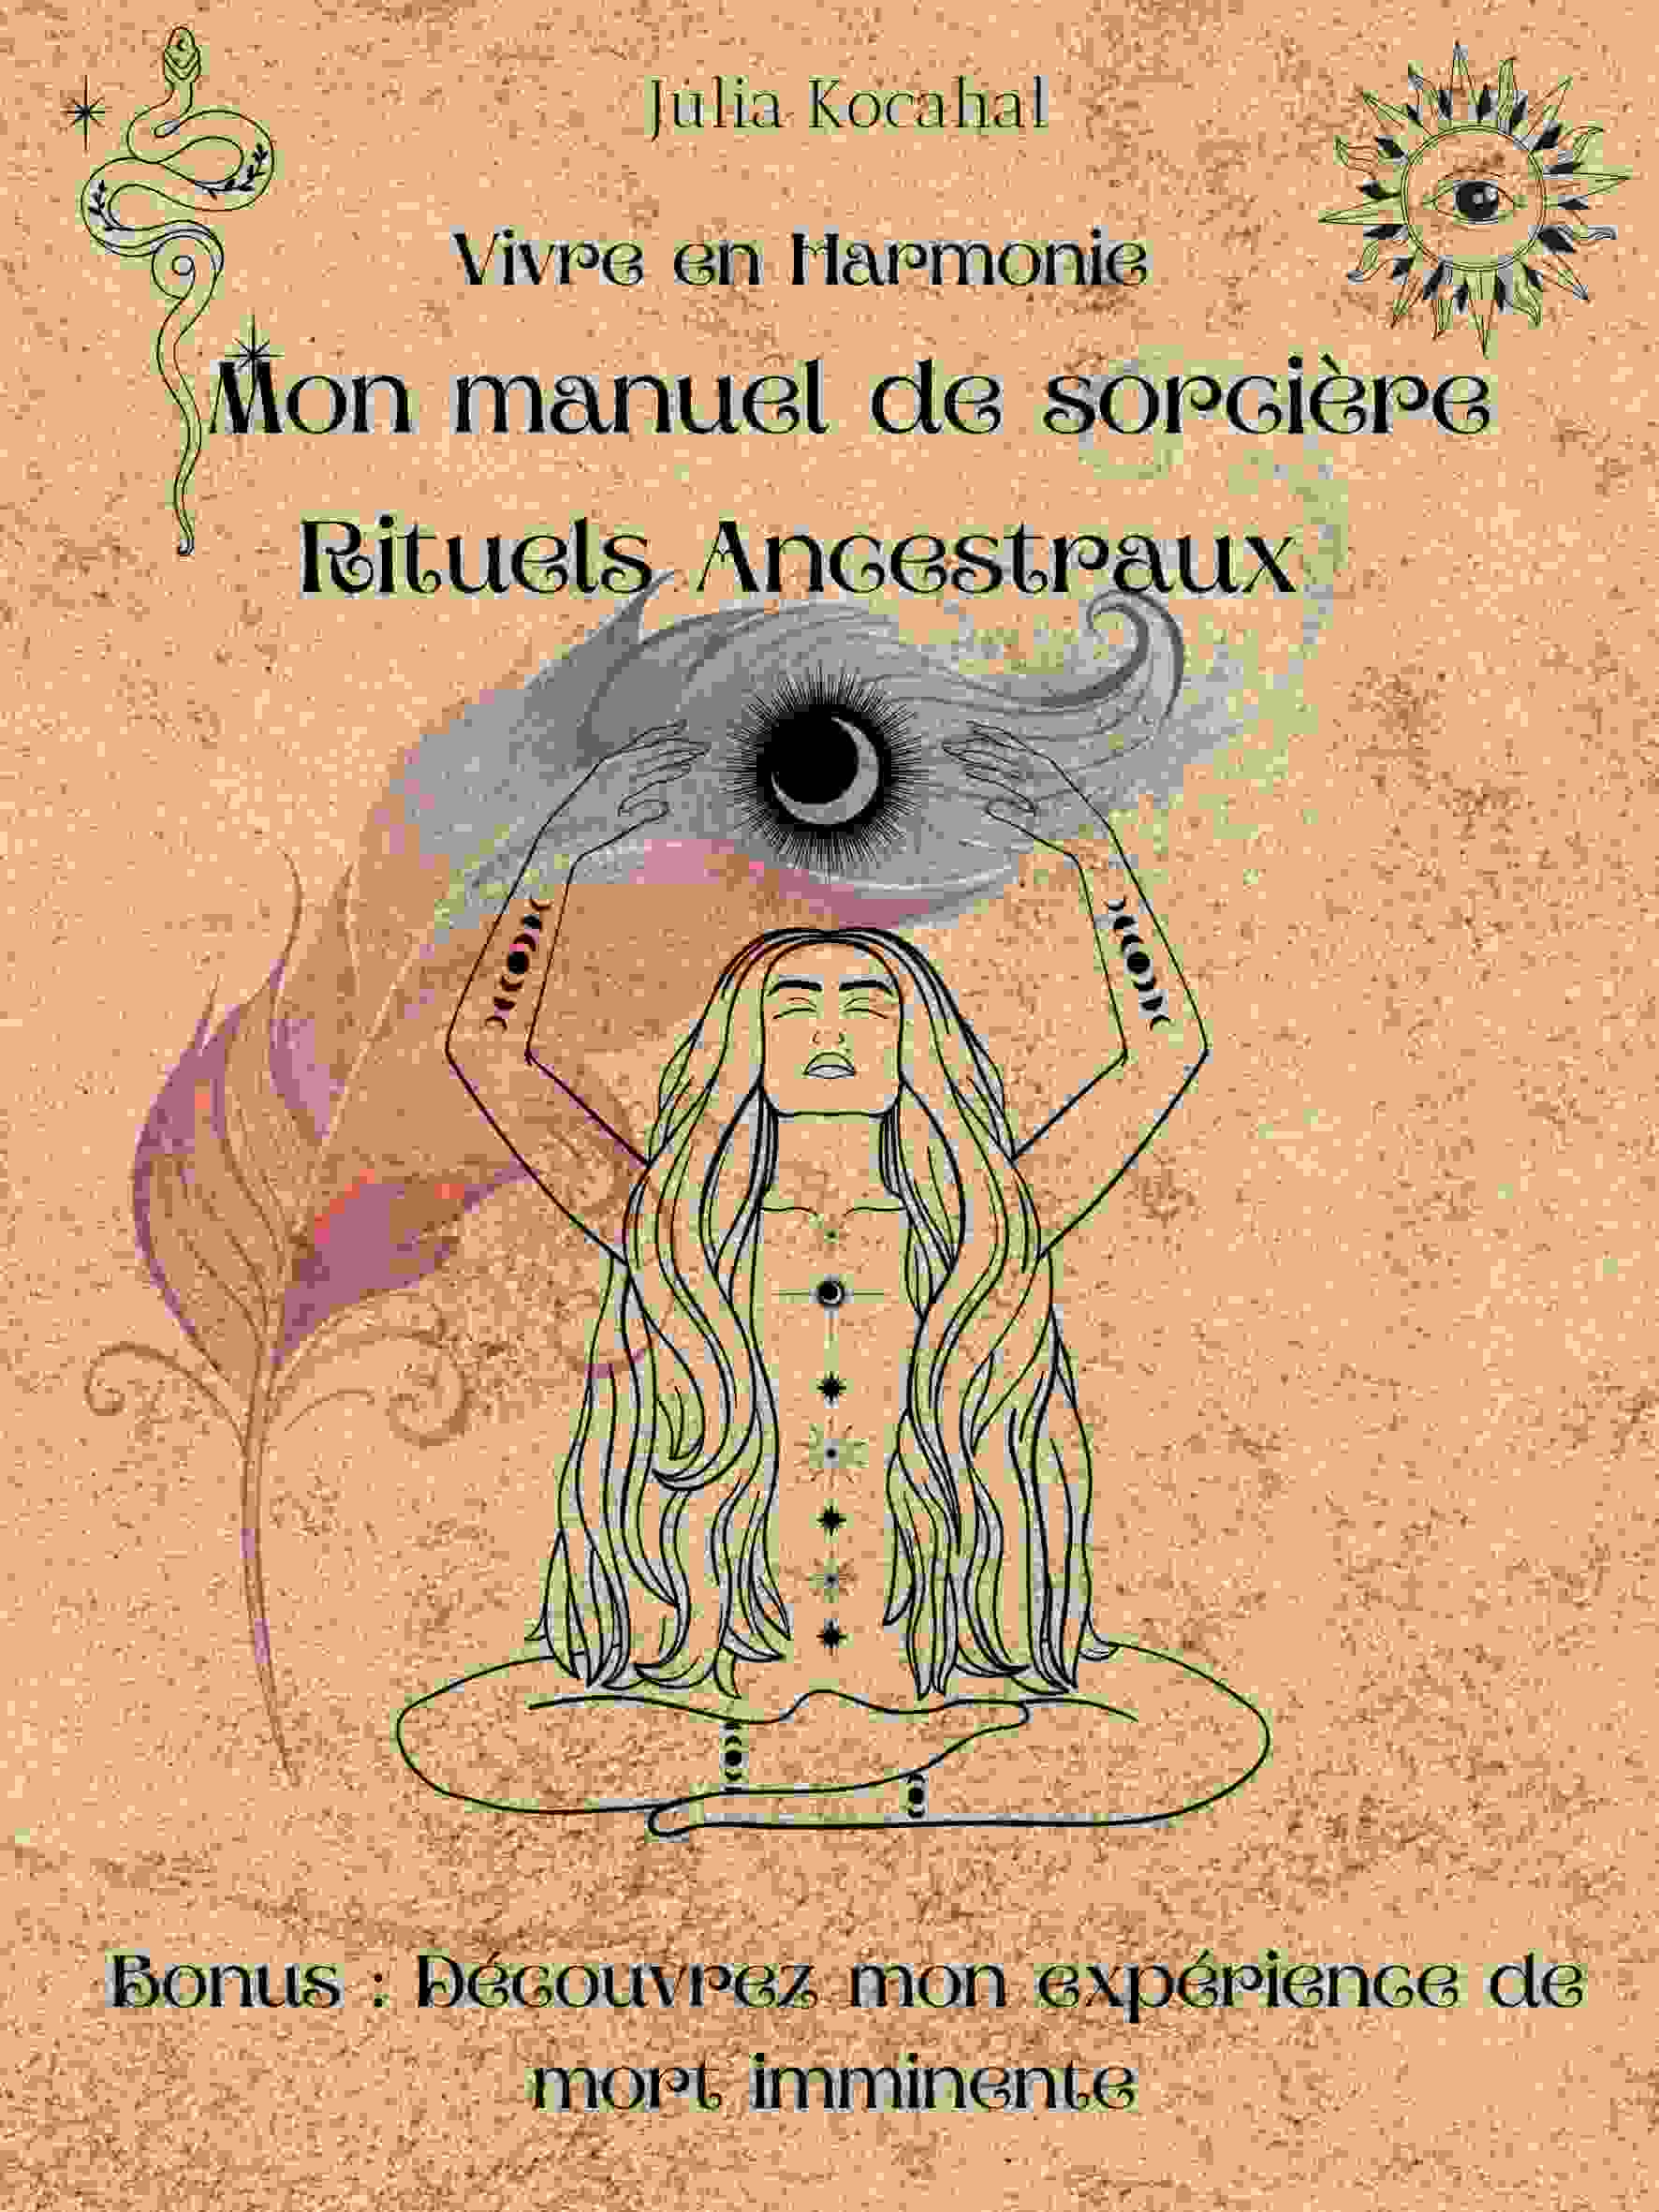 Kniha Rituels Ancestraux - Mon manuel de sorcière KOCAHAL